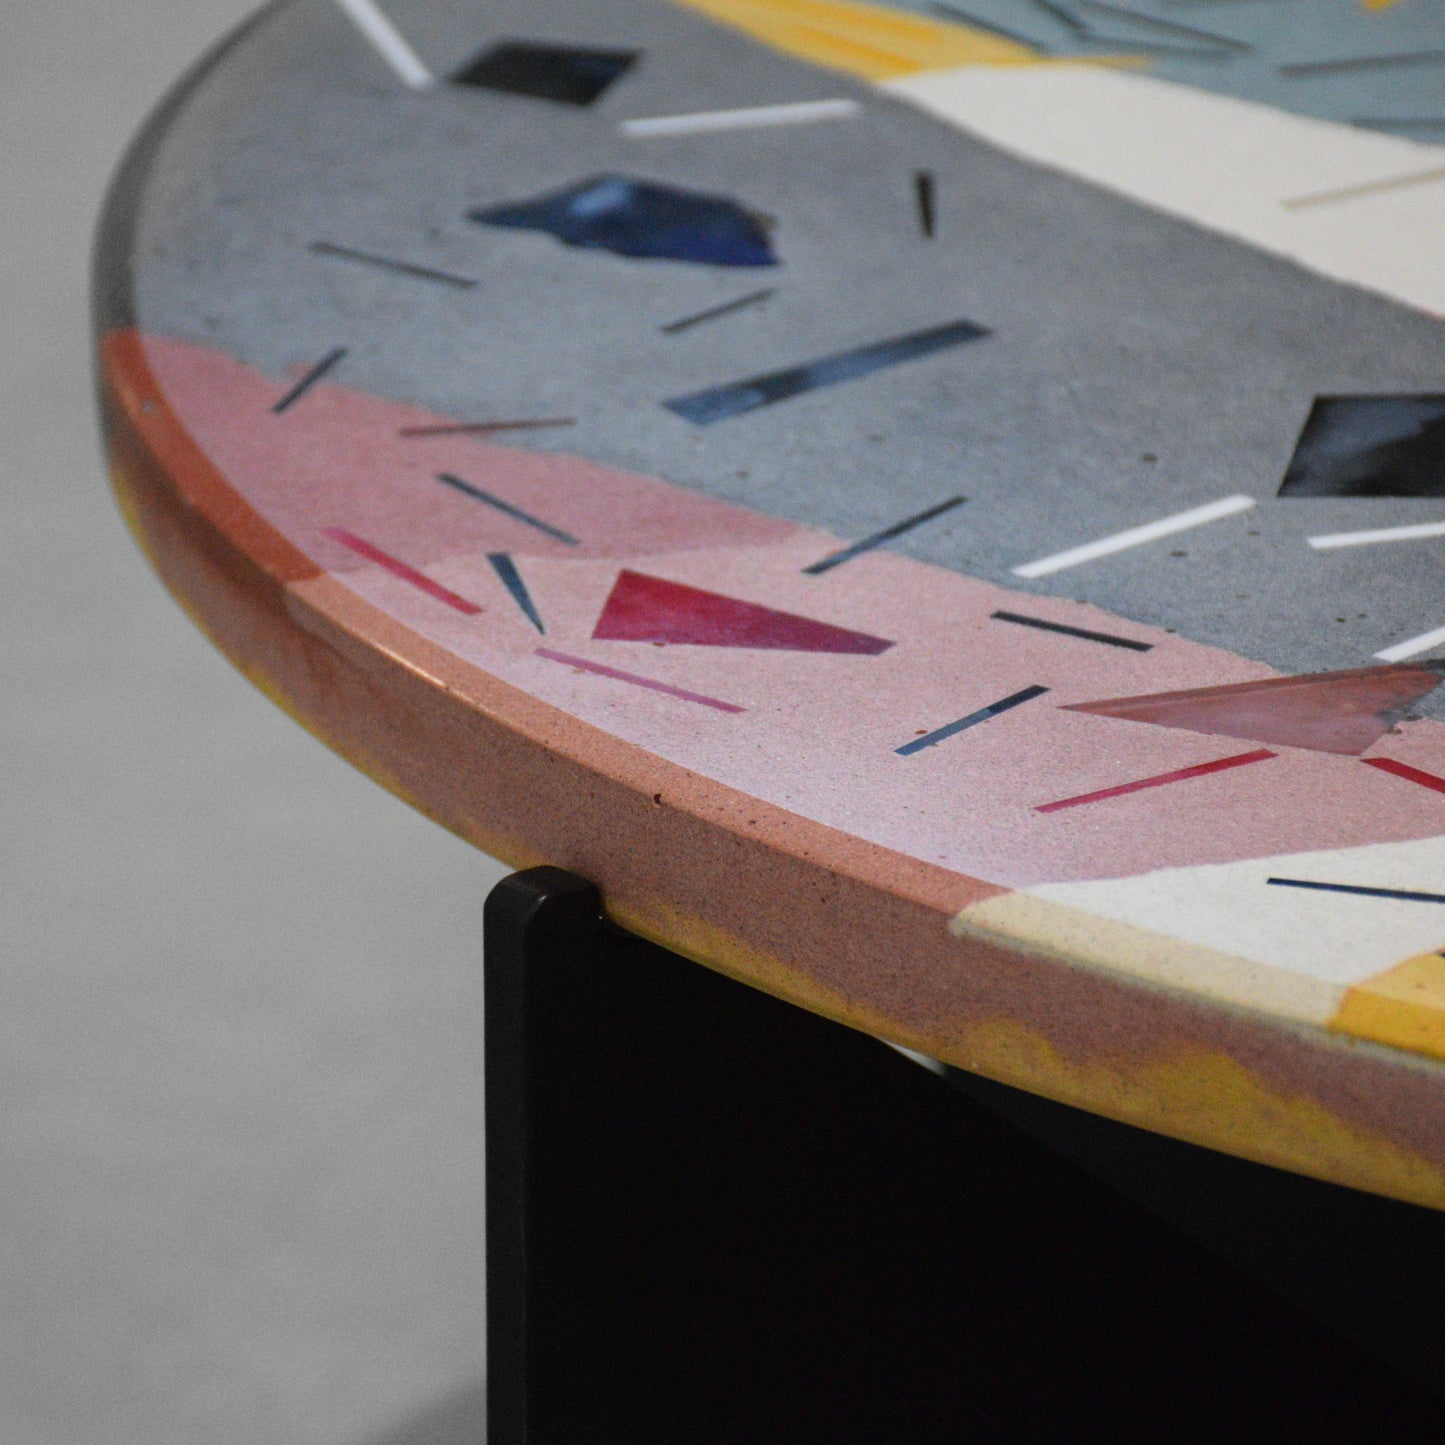 Six-coloured concrete terrazzo coffee table with murano glass 80cm